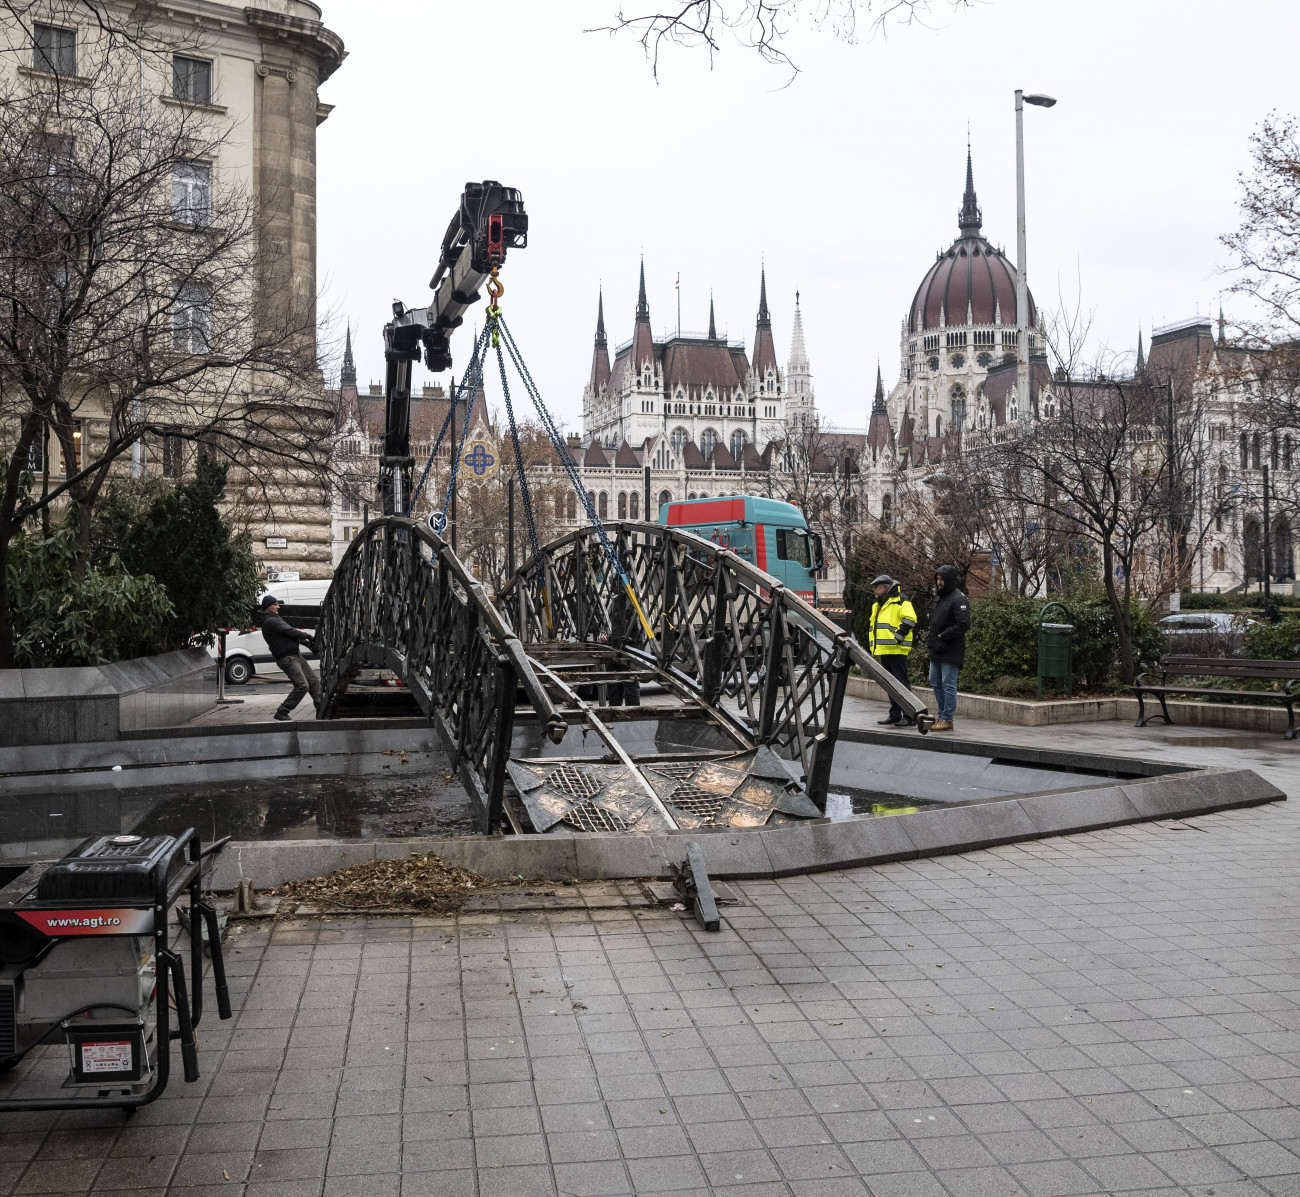 Budapest, 2018. december 28.
Újrafelállítás előtti restaurálásra elszállítják Varga Tamás szobrászművész Nagy Imre szoborkompozícióját az Országház tőszomszédságából, a Vértanúk teréről 2018. december 28-án. Az alkotóval folytatott egyeztetés, a szükséges hozzájárulások beszerzése, valamint a terület előkészítése után kerülhet a mártír miniszterelnök emlékműve a Jászai Mari térre, a tervek szerint még 2019. június 16. előtt. A szoborkompozíció elszállításával megkezdődött a Vértanúk terének rehabilitációja.
MTI/Szigetváry Zsolt